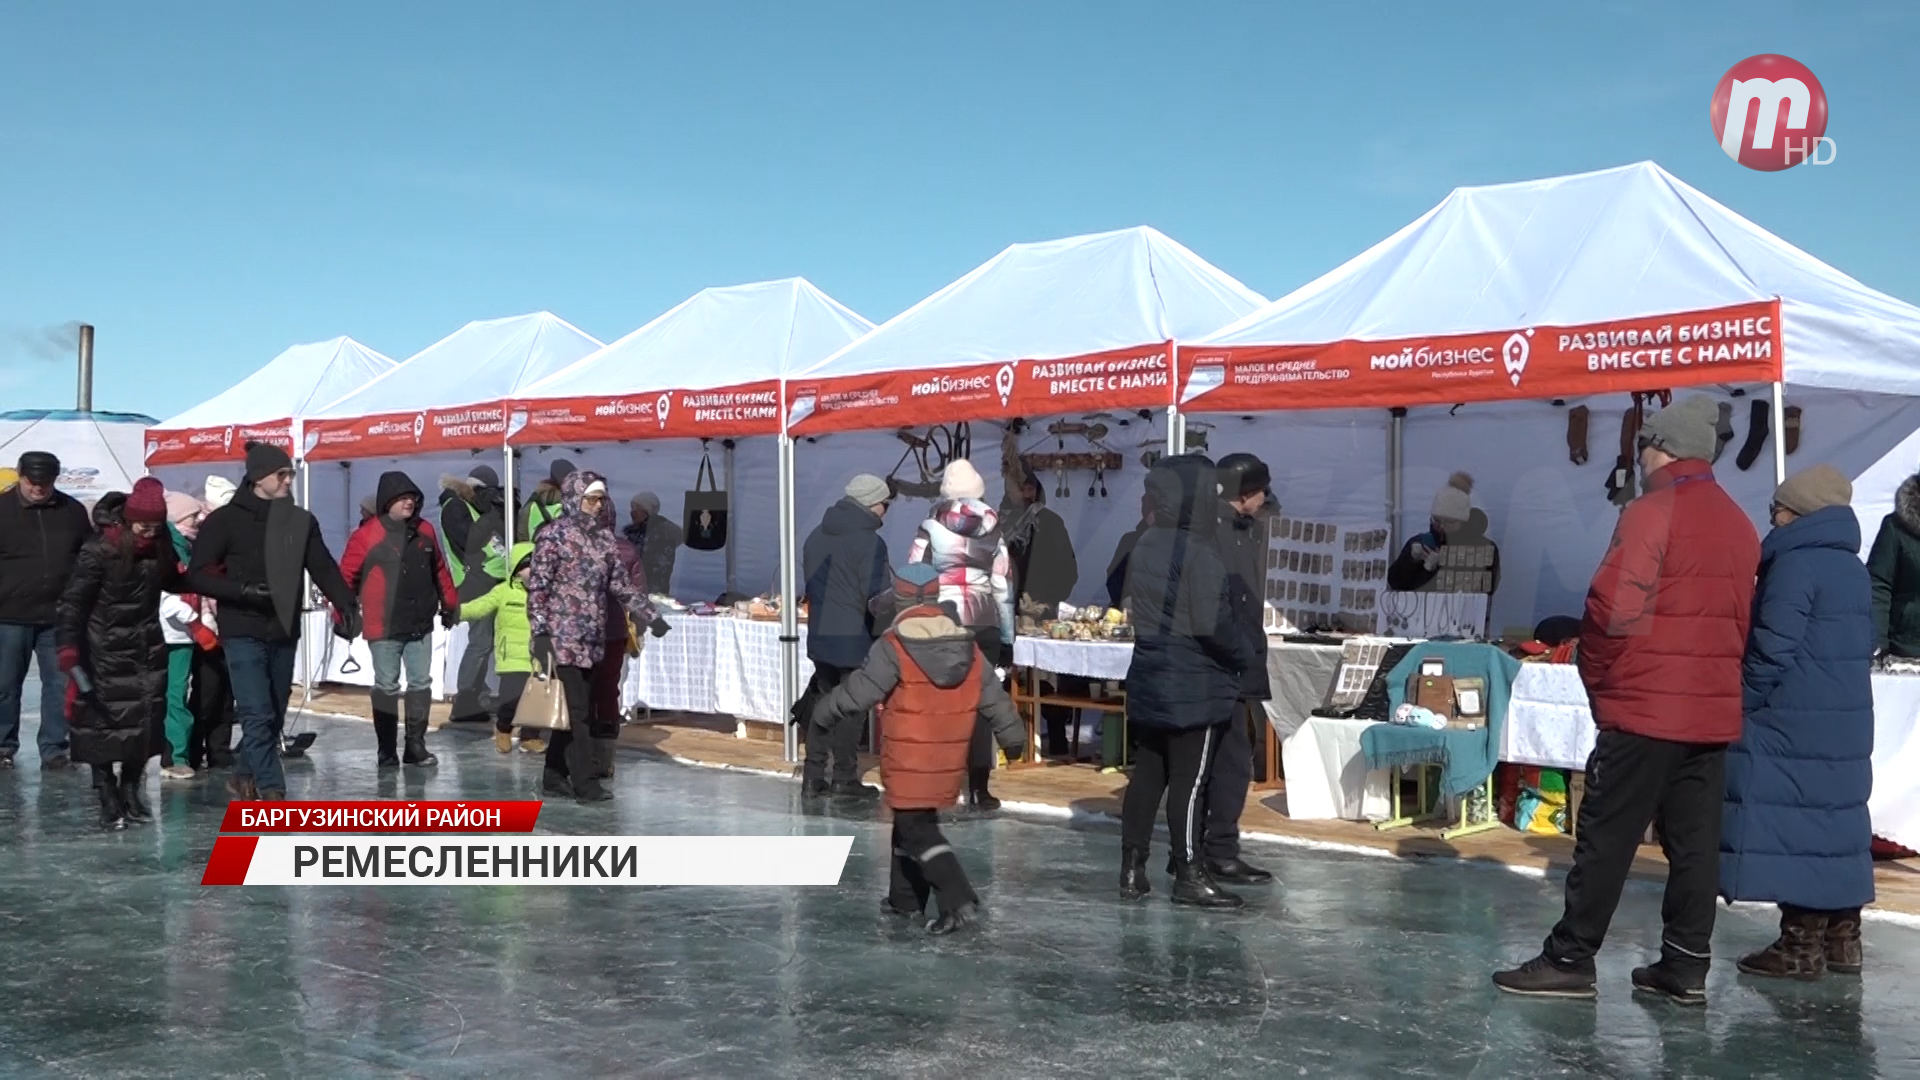 На Байкале прошла ярмарка сувениров, приуроченная к фестивалю скорости "Байкальская миля"